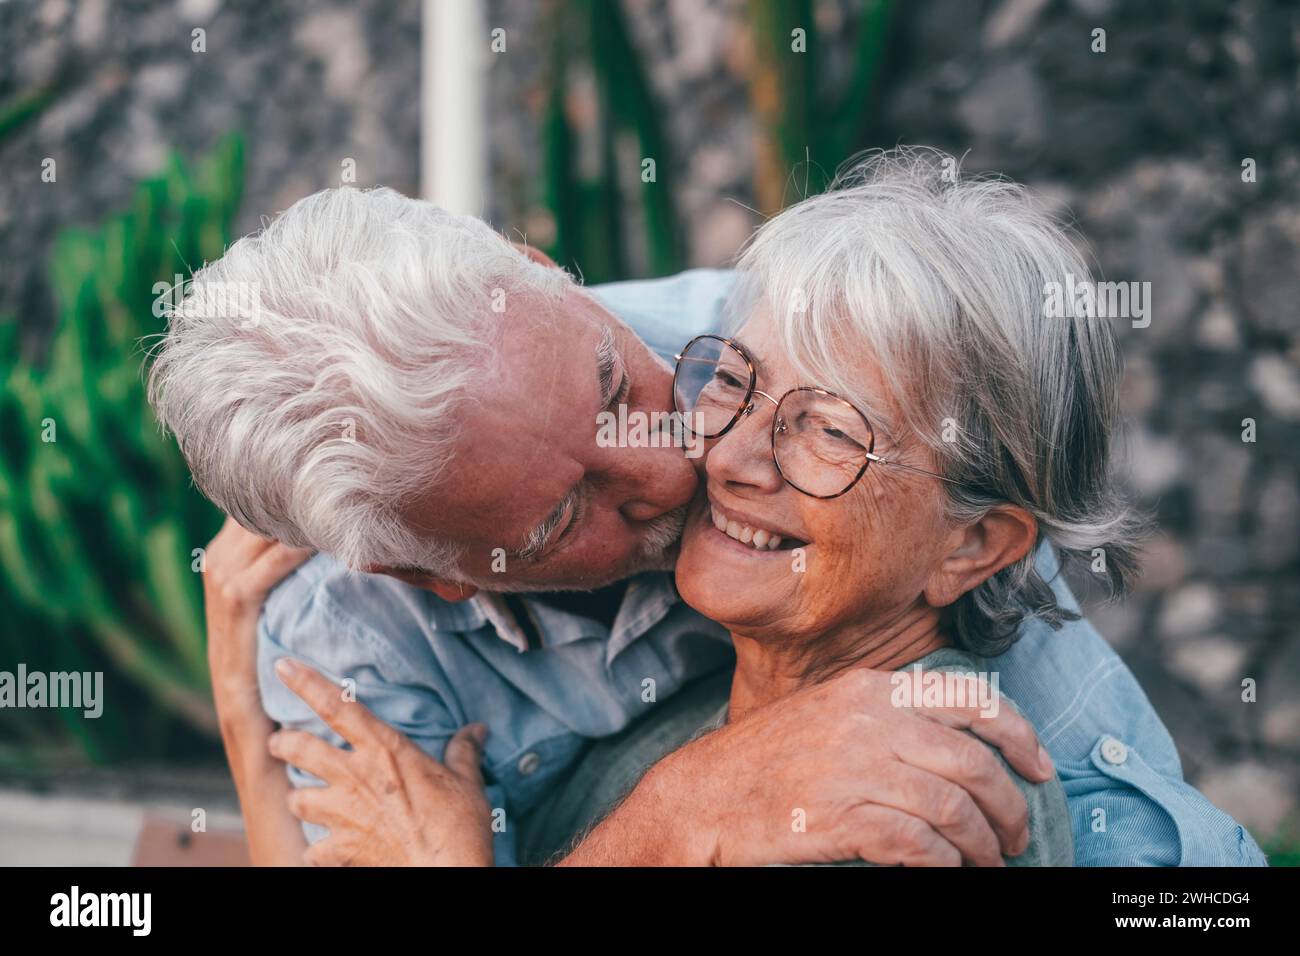 Eine Frau im mittleren Alter sitzt auf der Parkbank und der alte Mann umarmt sie von hinten. Ein paar Rentner entspannen und genießen gemeinsam den Sonnenuntergang im Freien. Stockfoto